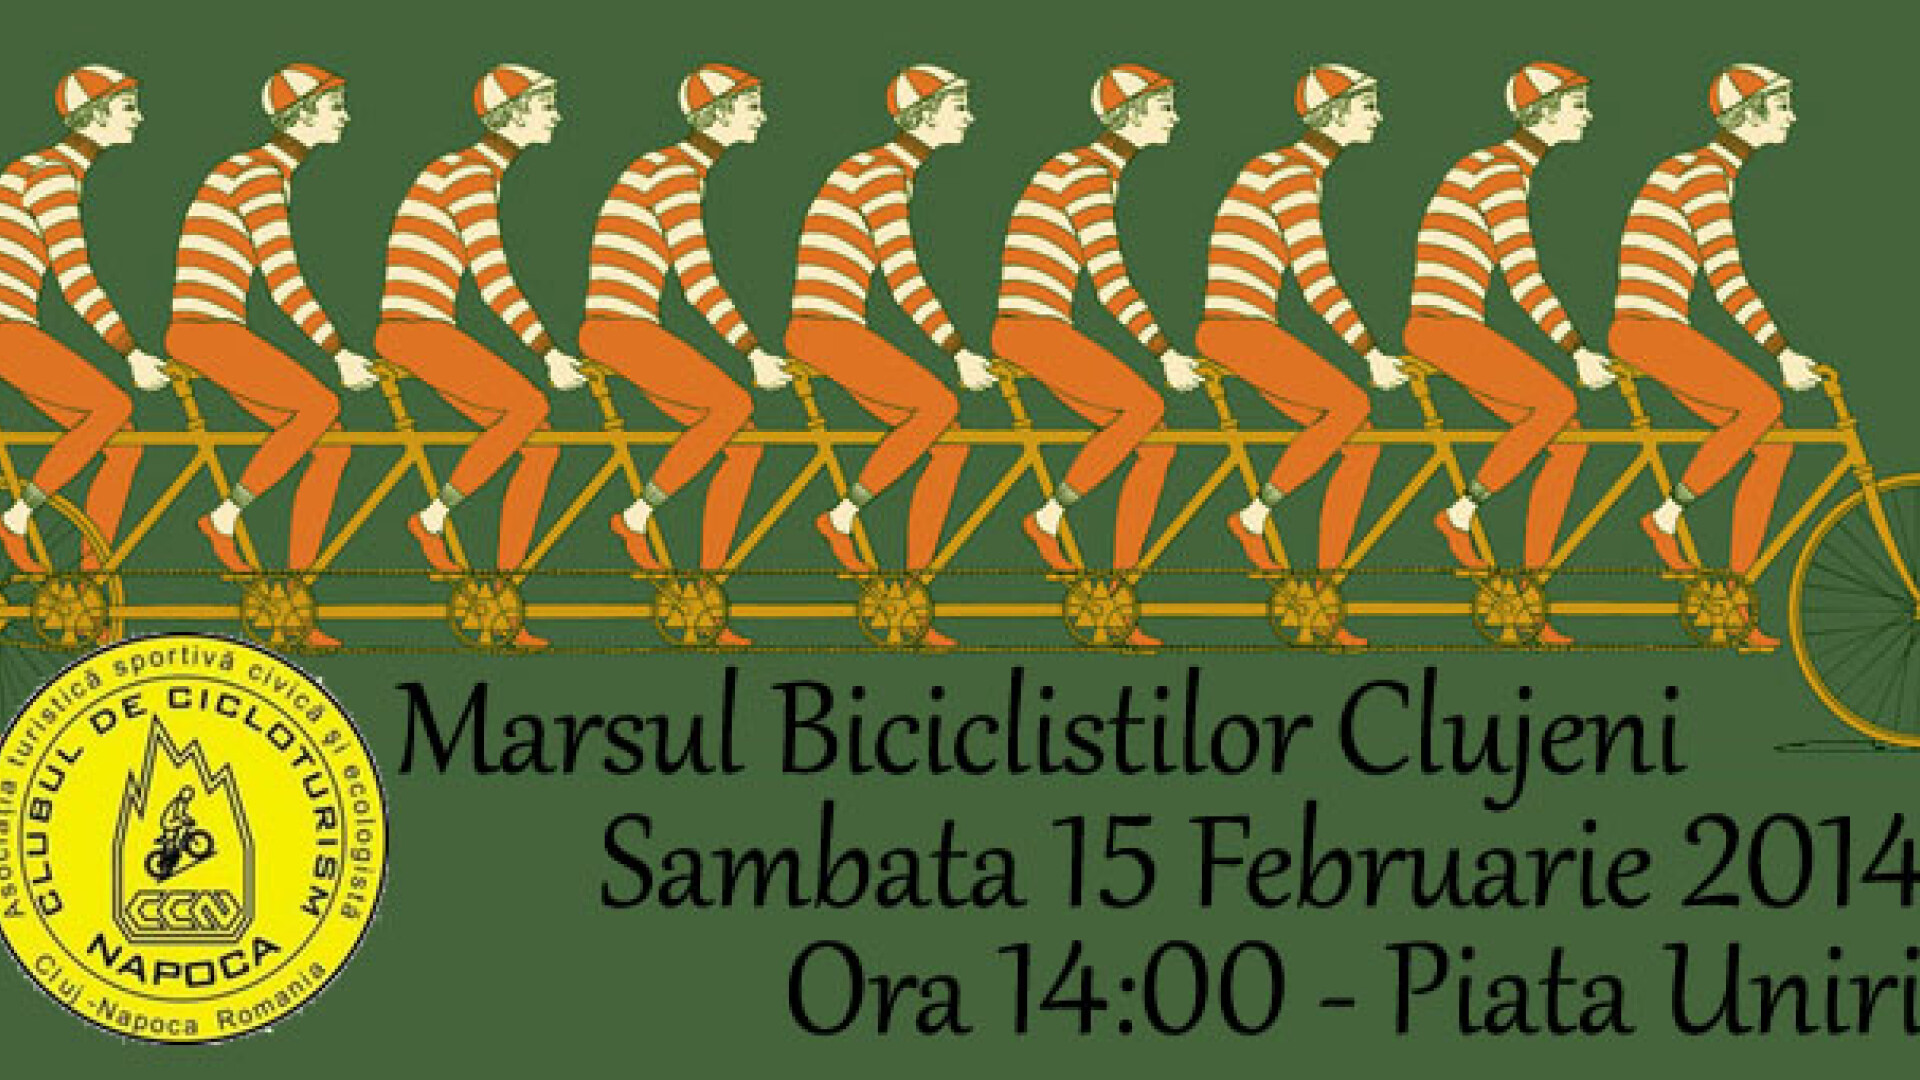 Biciclistii din Cluj, asteptati la o noua editie a Marsului Biciclistilor